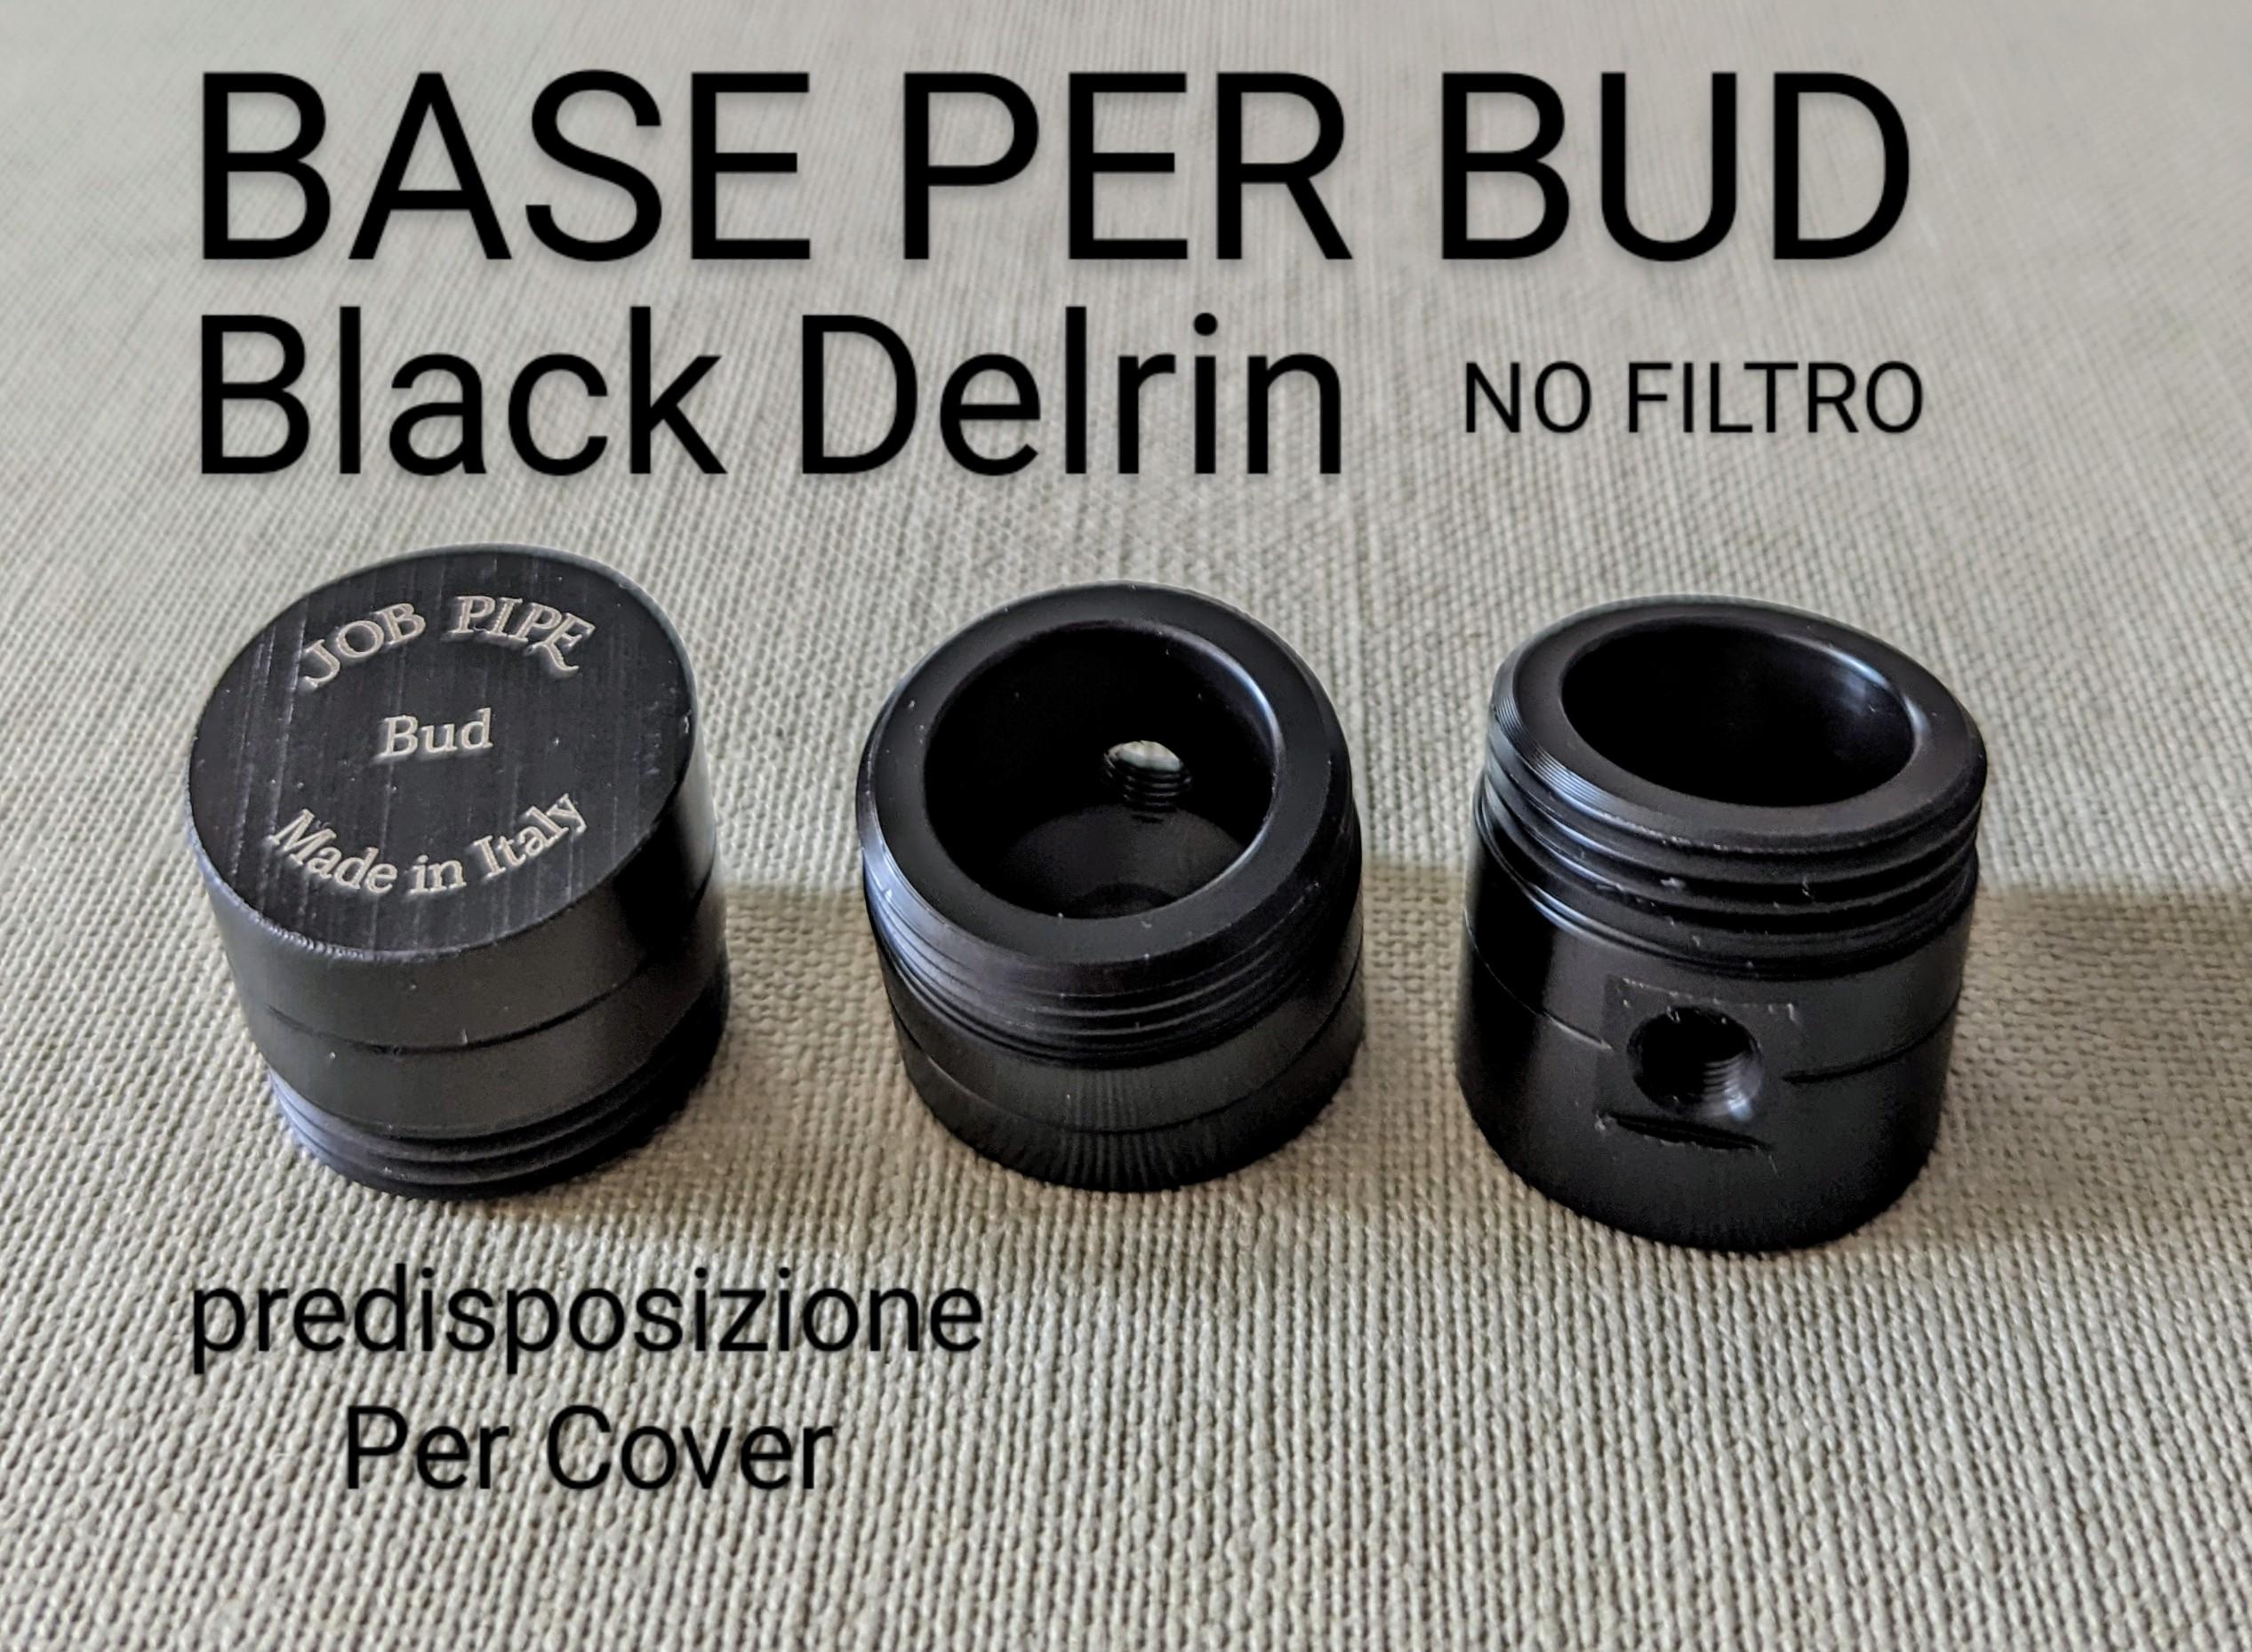 Job Pipe New Black Delrin Base (No Filtro) Per Modelli Bud